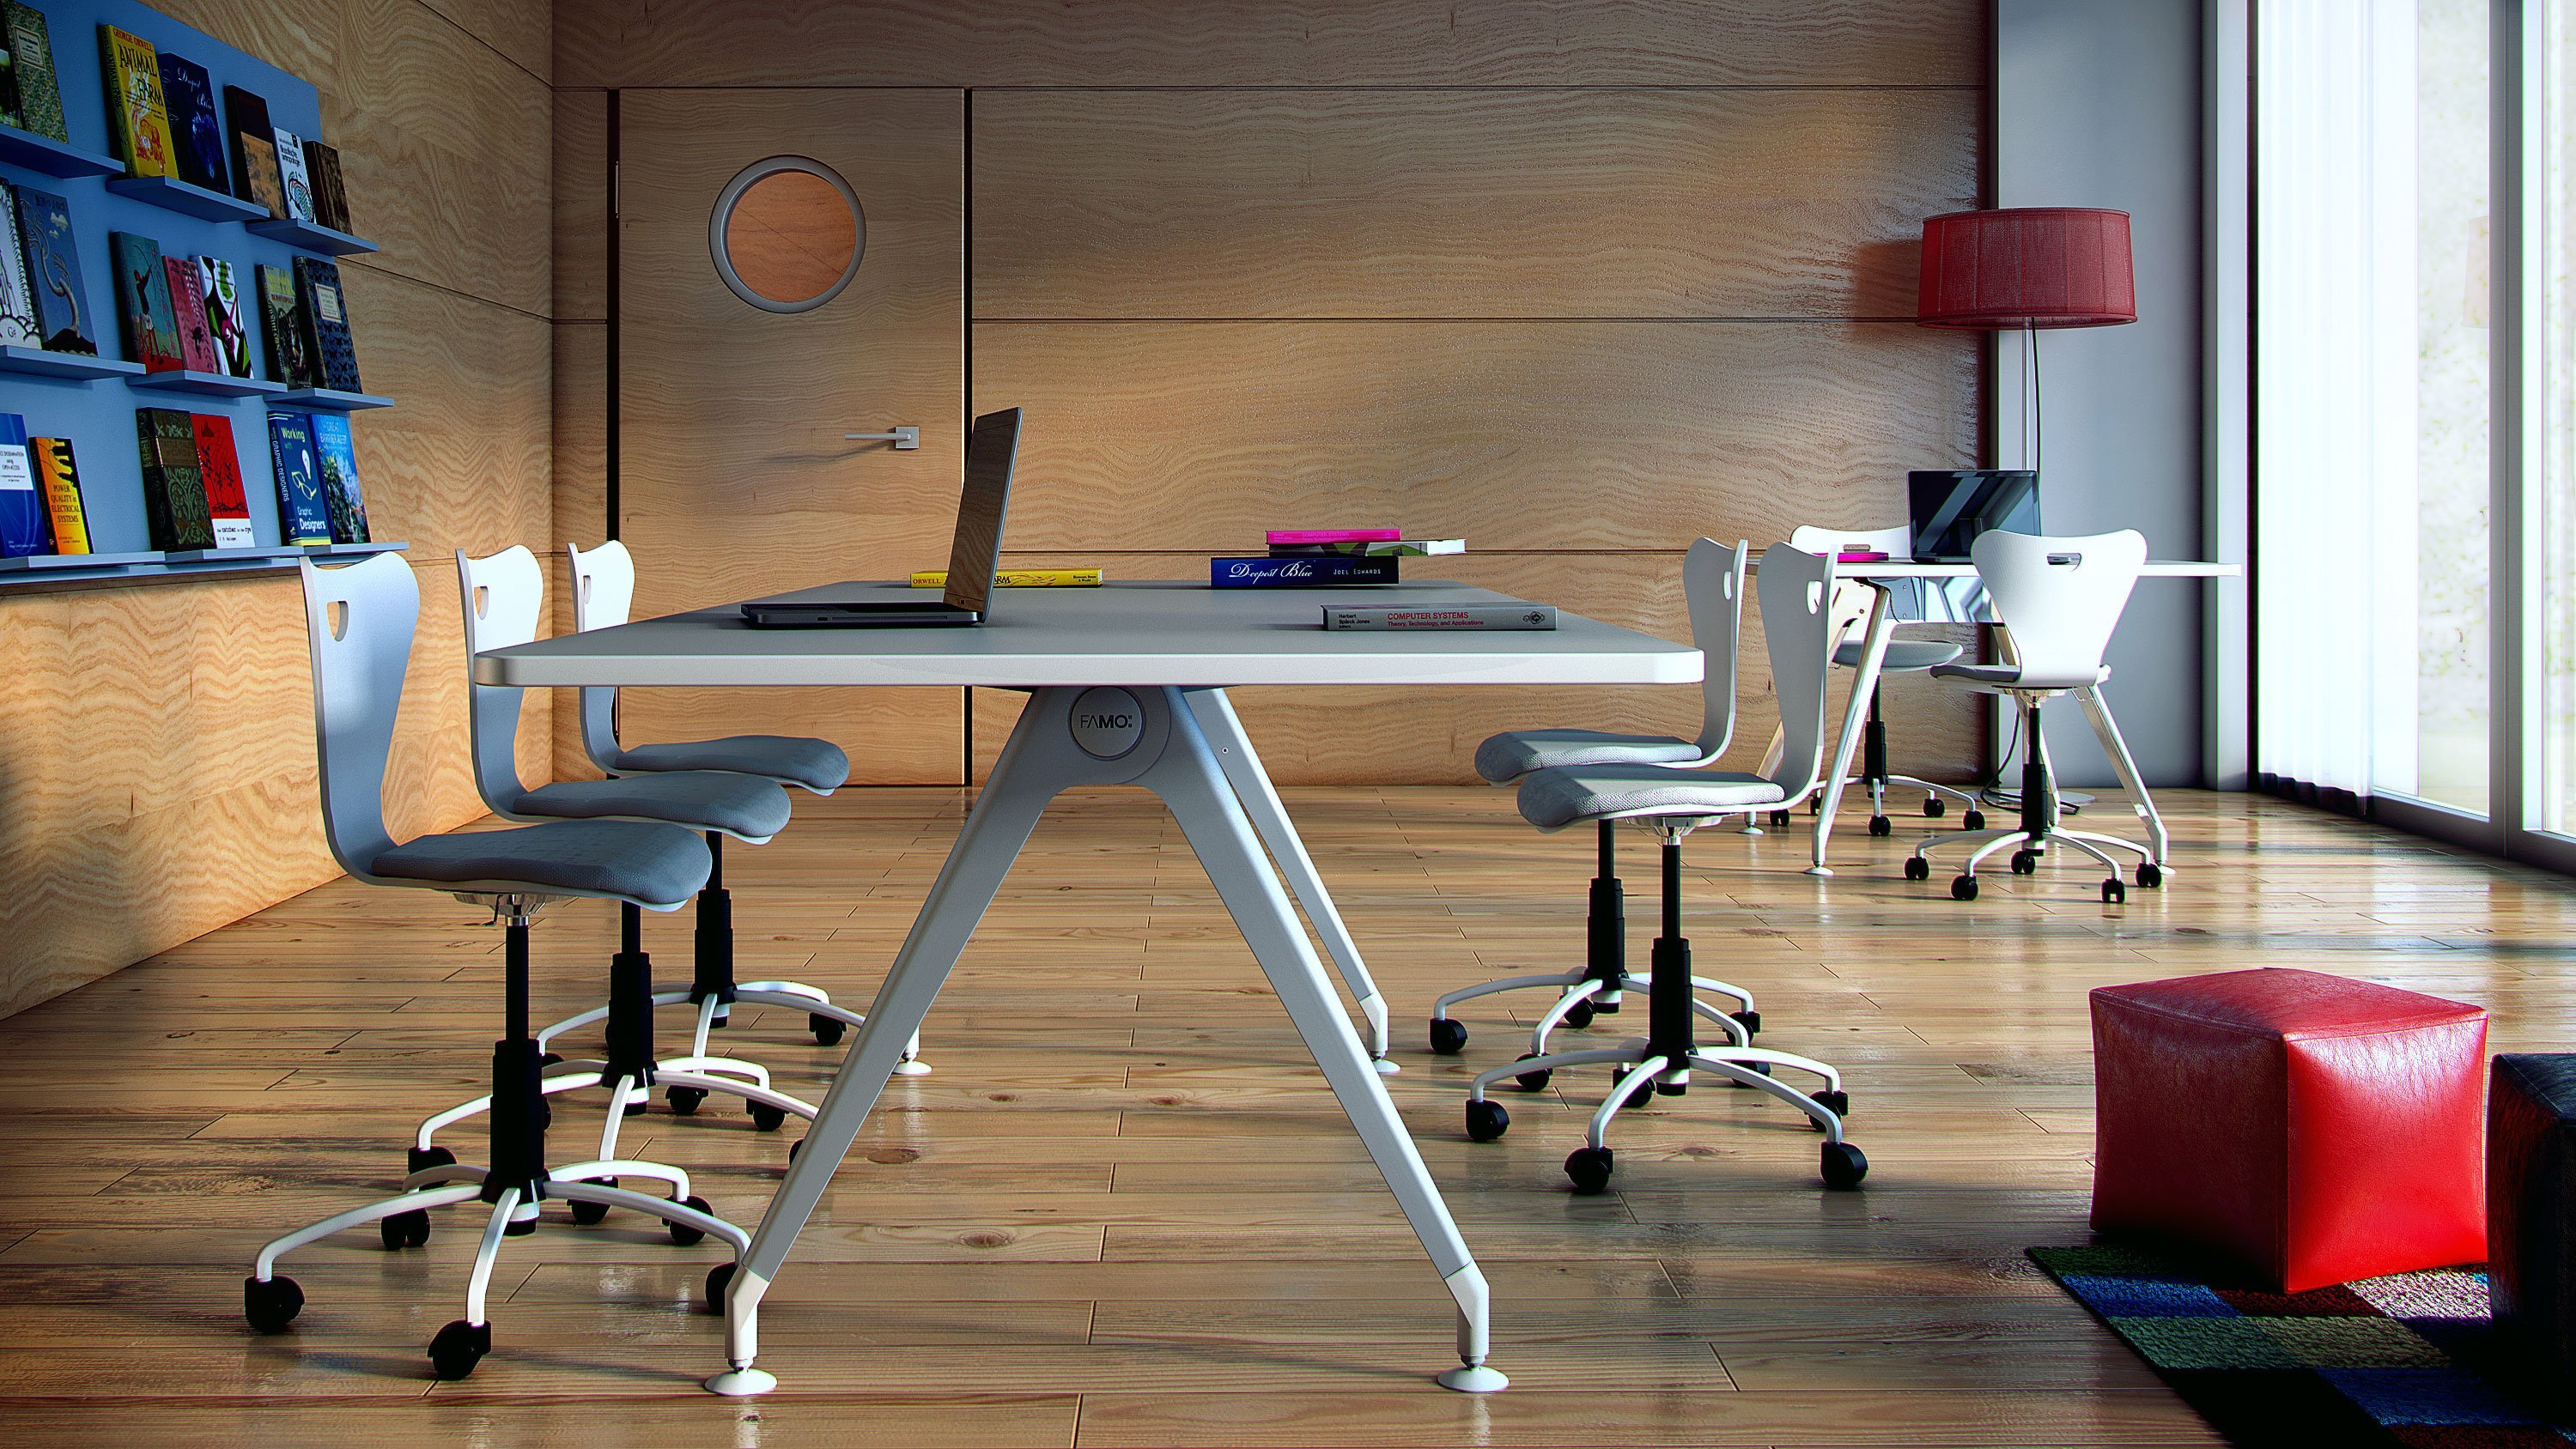 Картинка на рабочий стол на работе. Рабочий стол в офисе. Креативный стиль для офисного стола. Обои на рабочий стол работа в офисе. Офис стол фон.